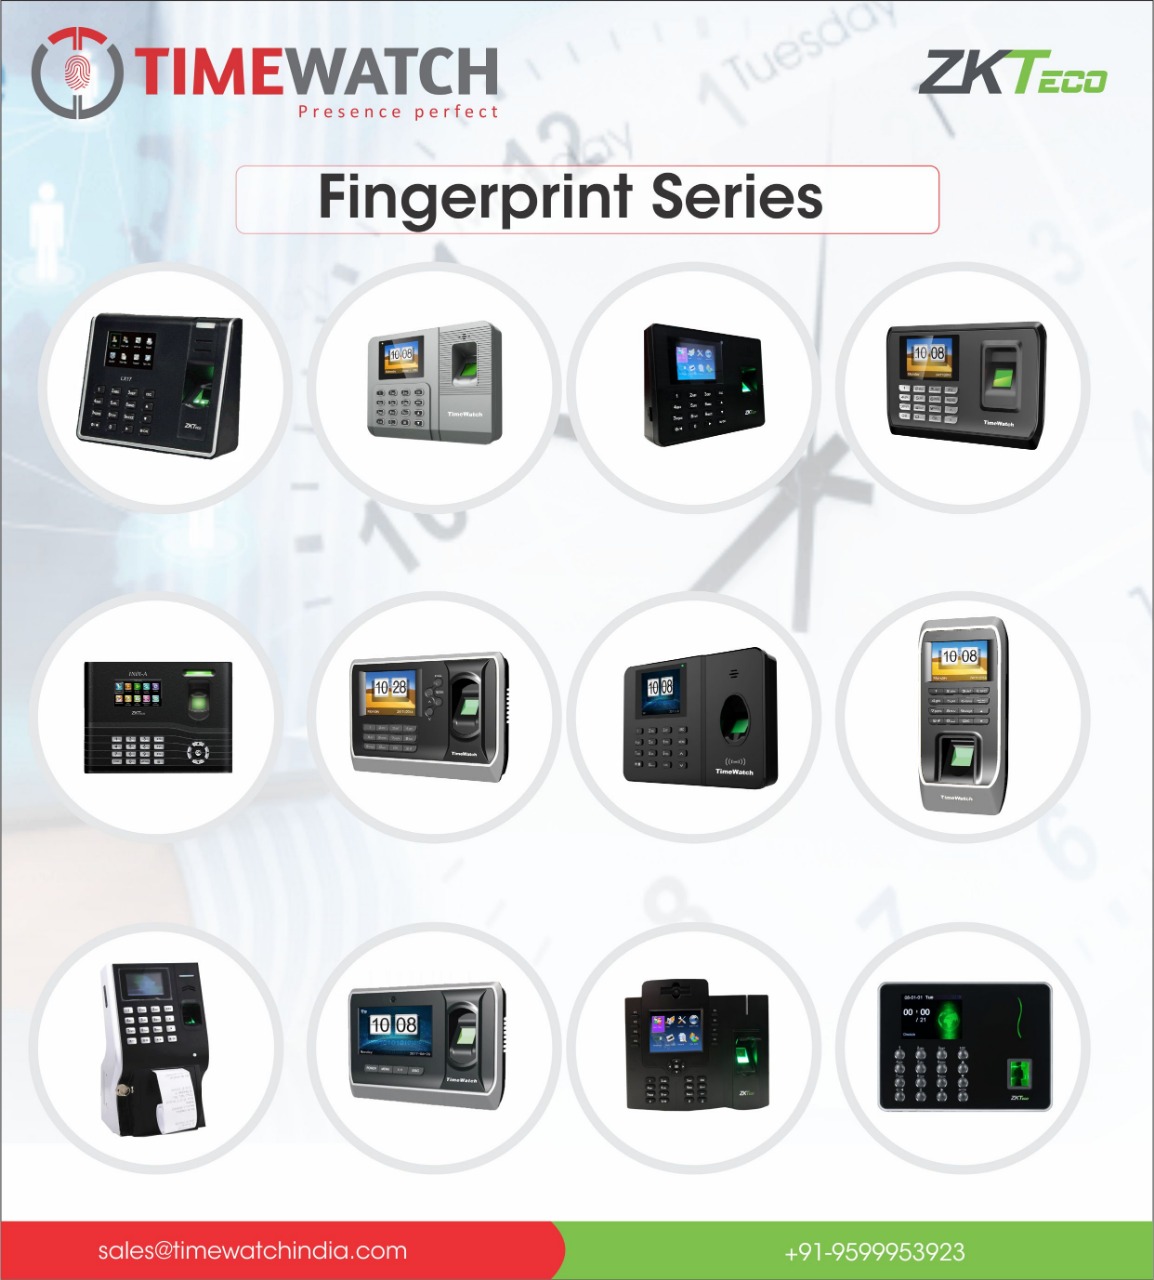 820187_Fingerprint Series.jpg